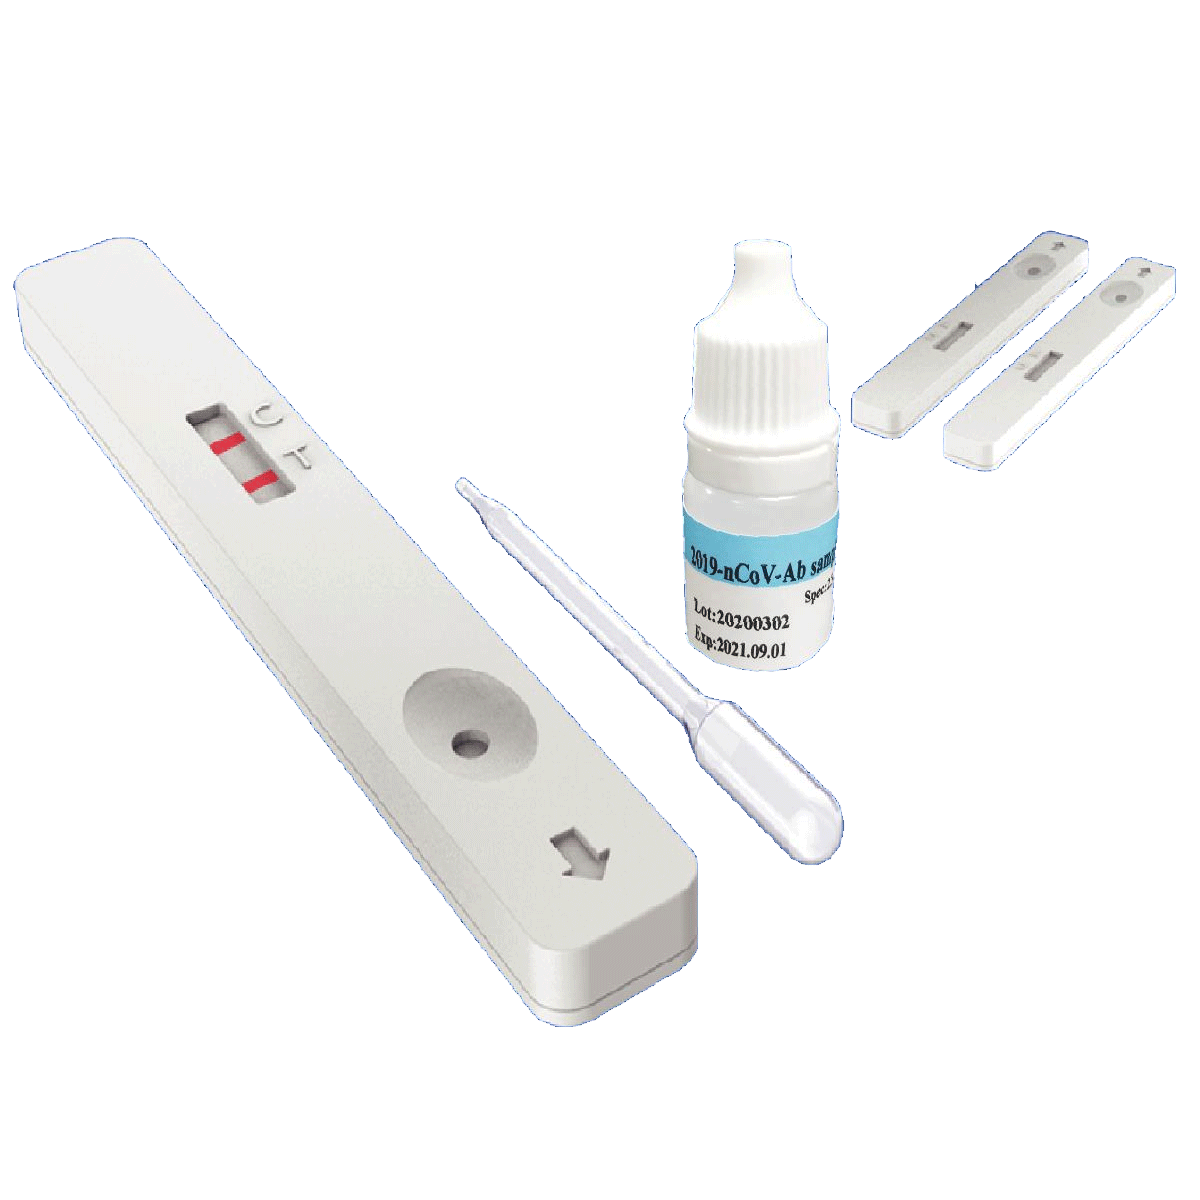 Covid-19 Self-diagnosis test kit